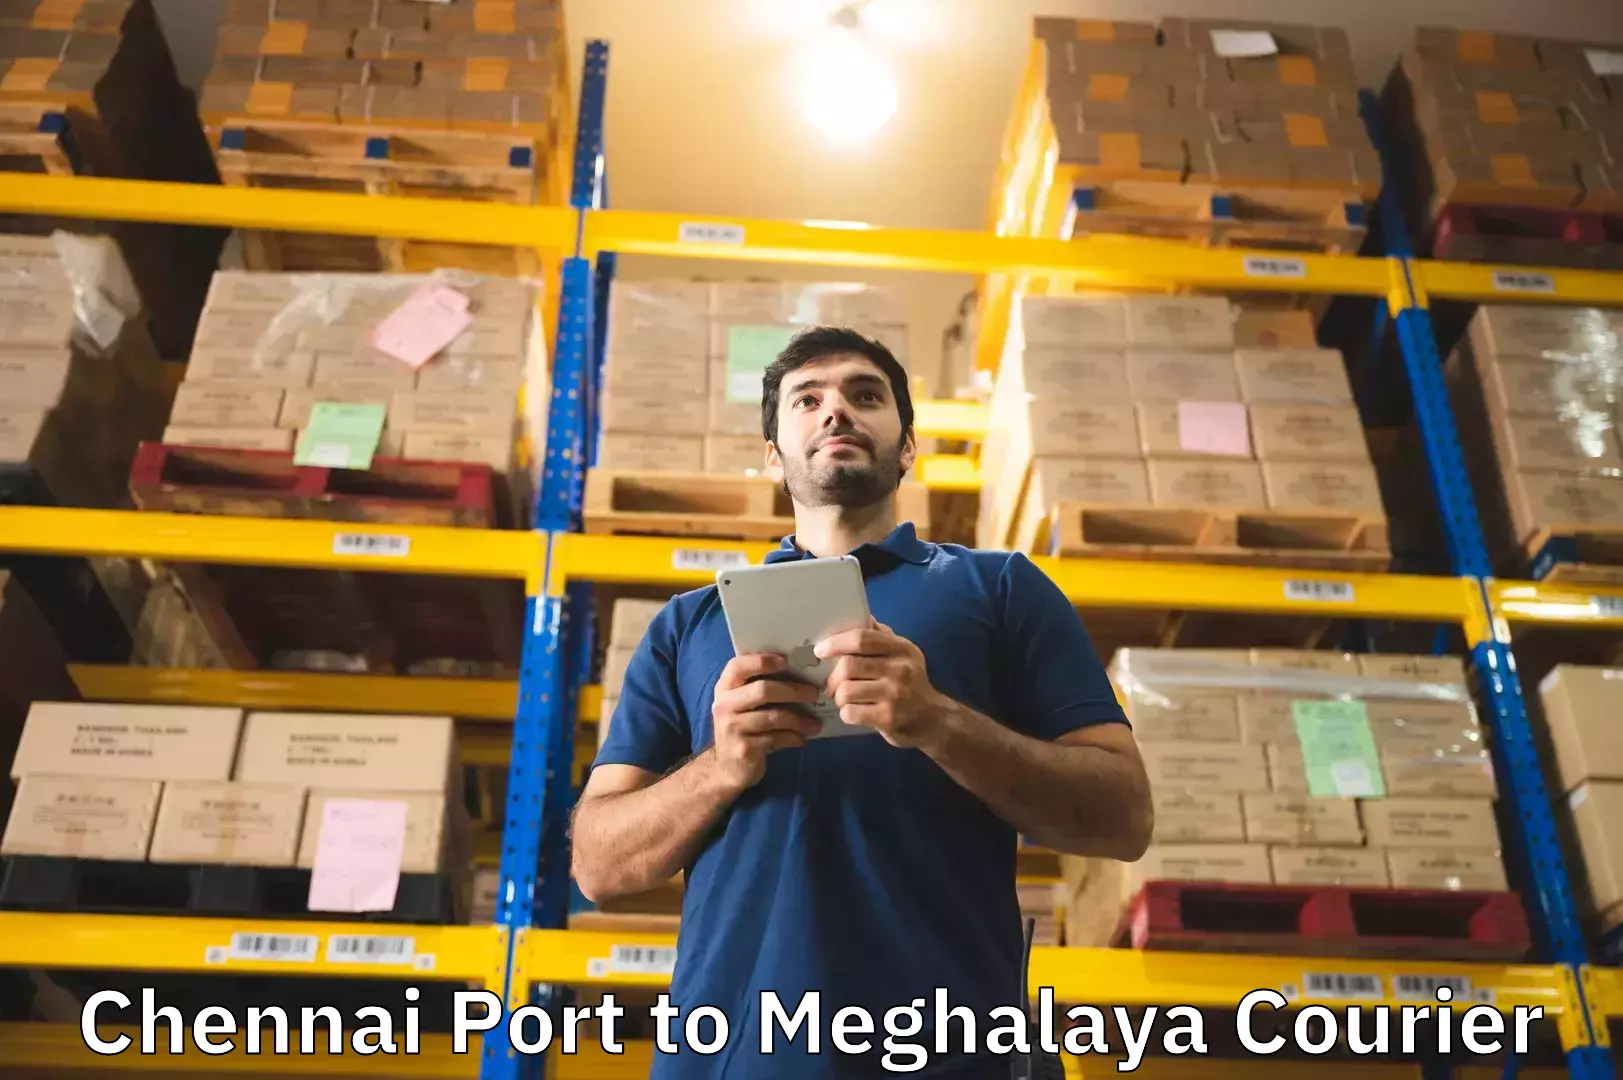 Baggage shipping service Chennai Port to Shillong